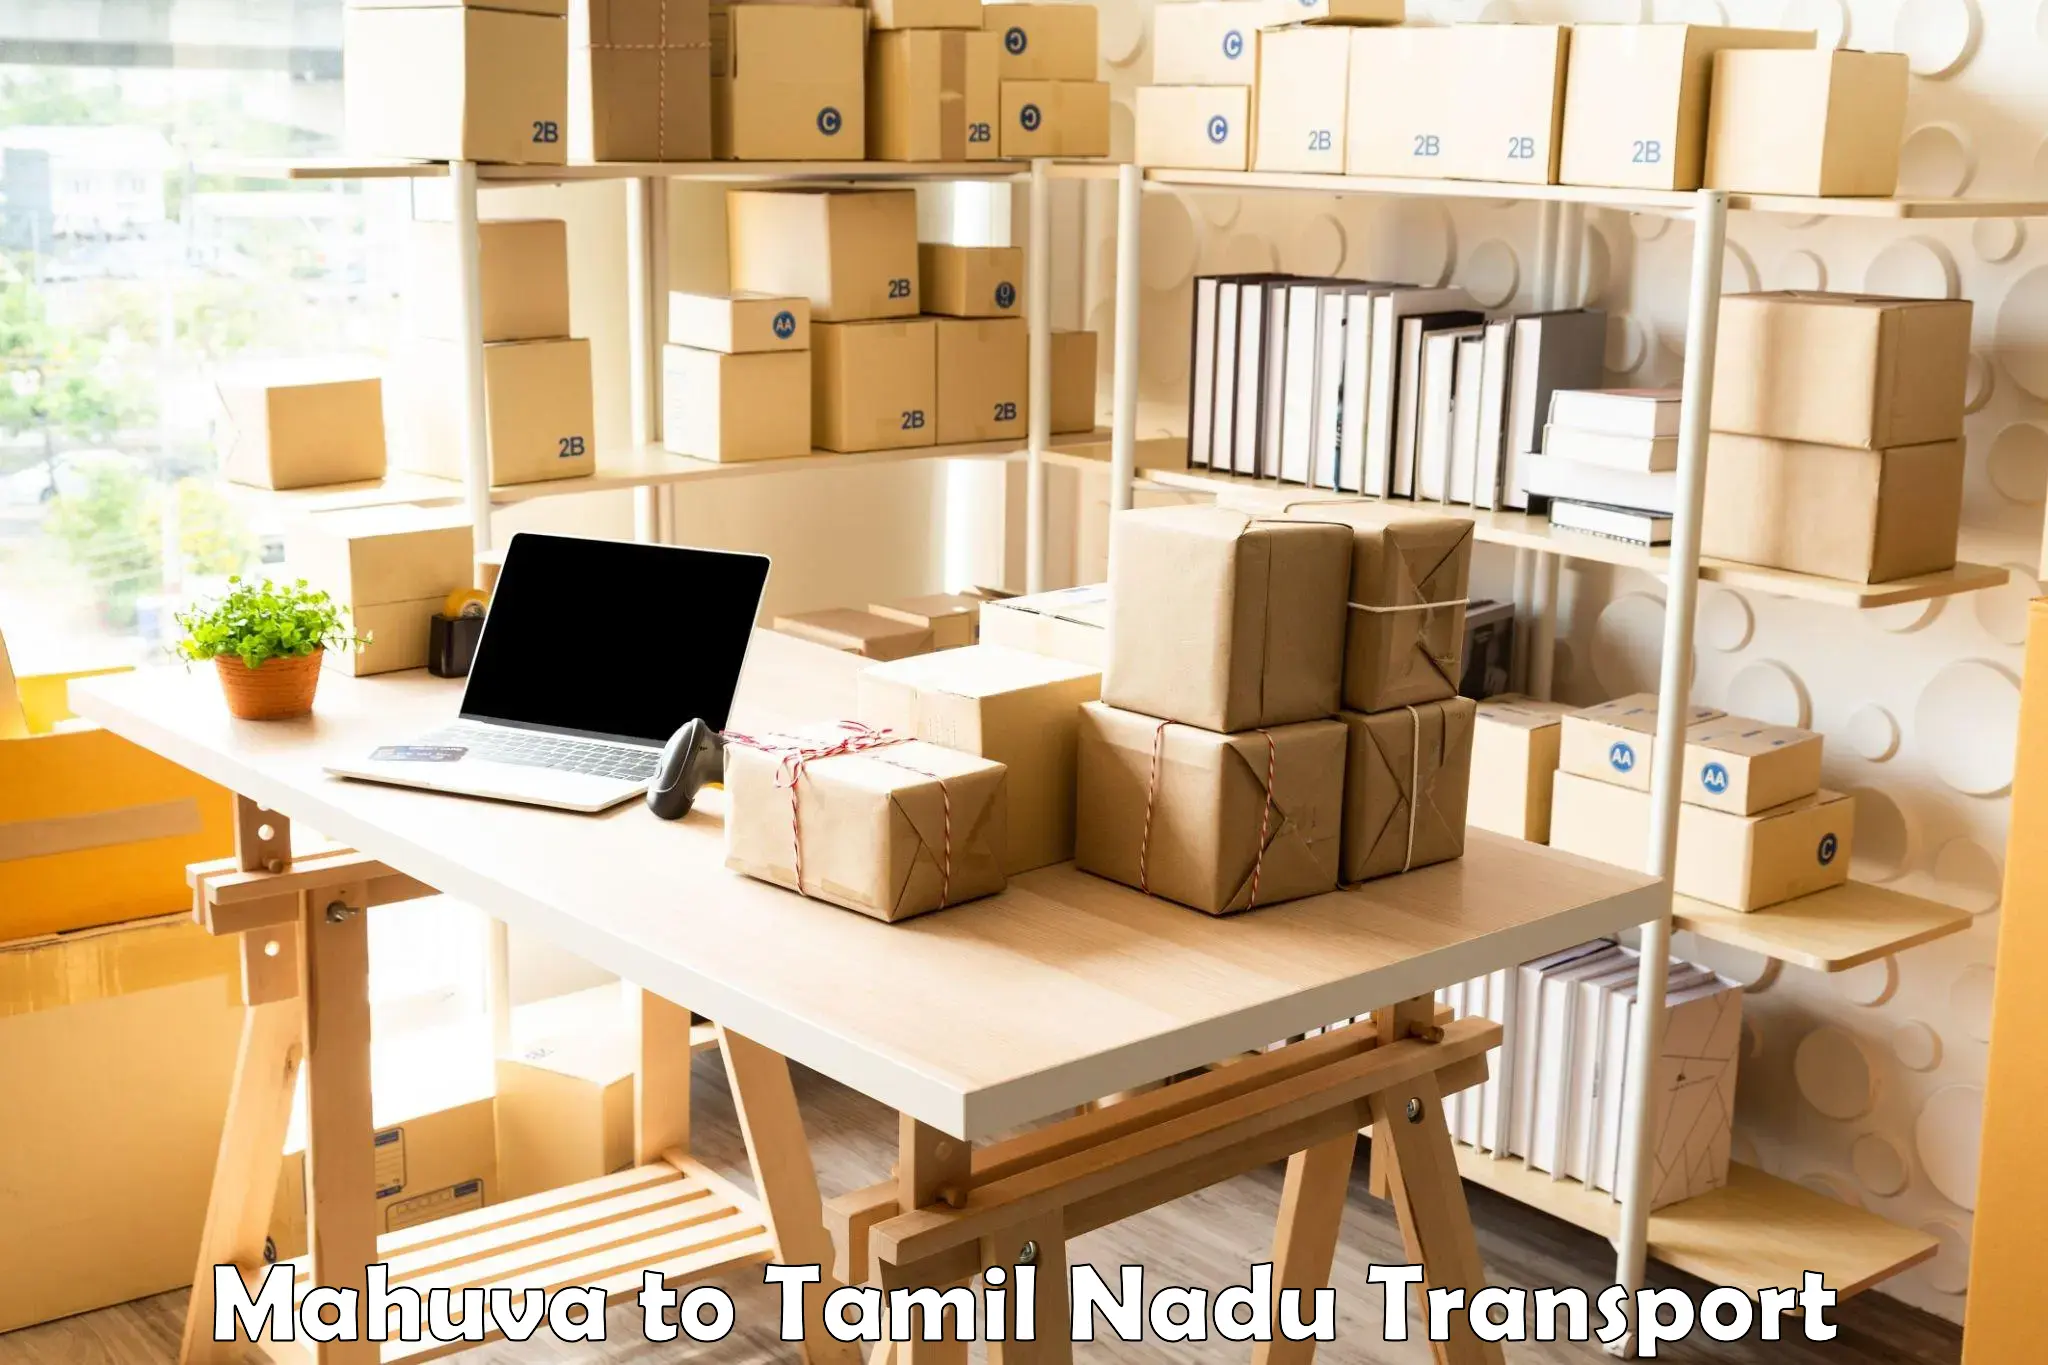 Cargo transportation services Mahuva to Coimbatore